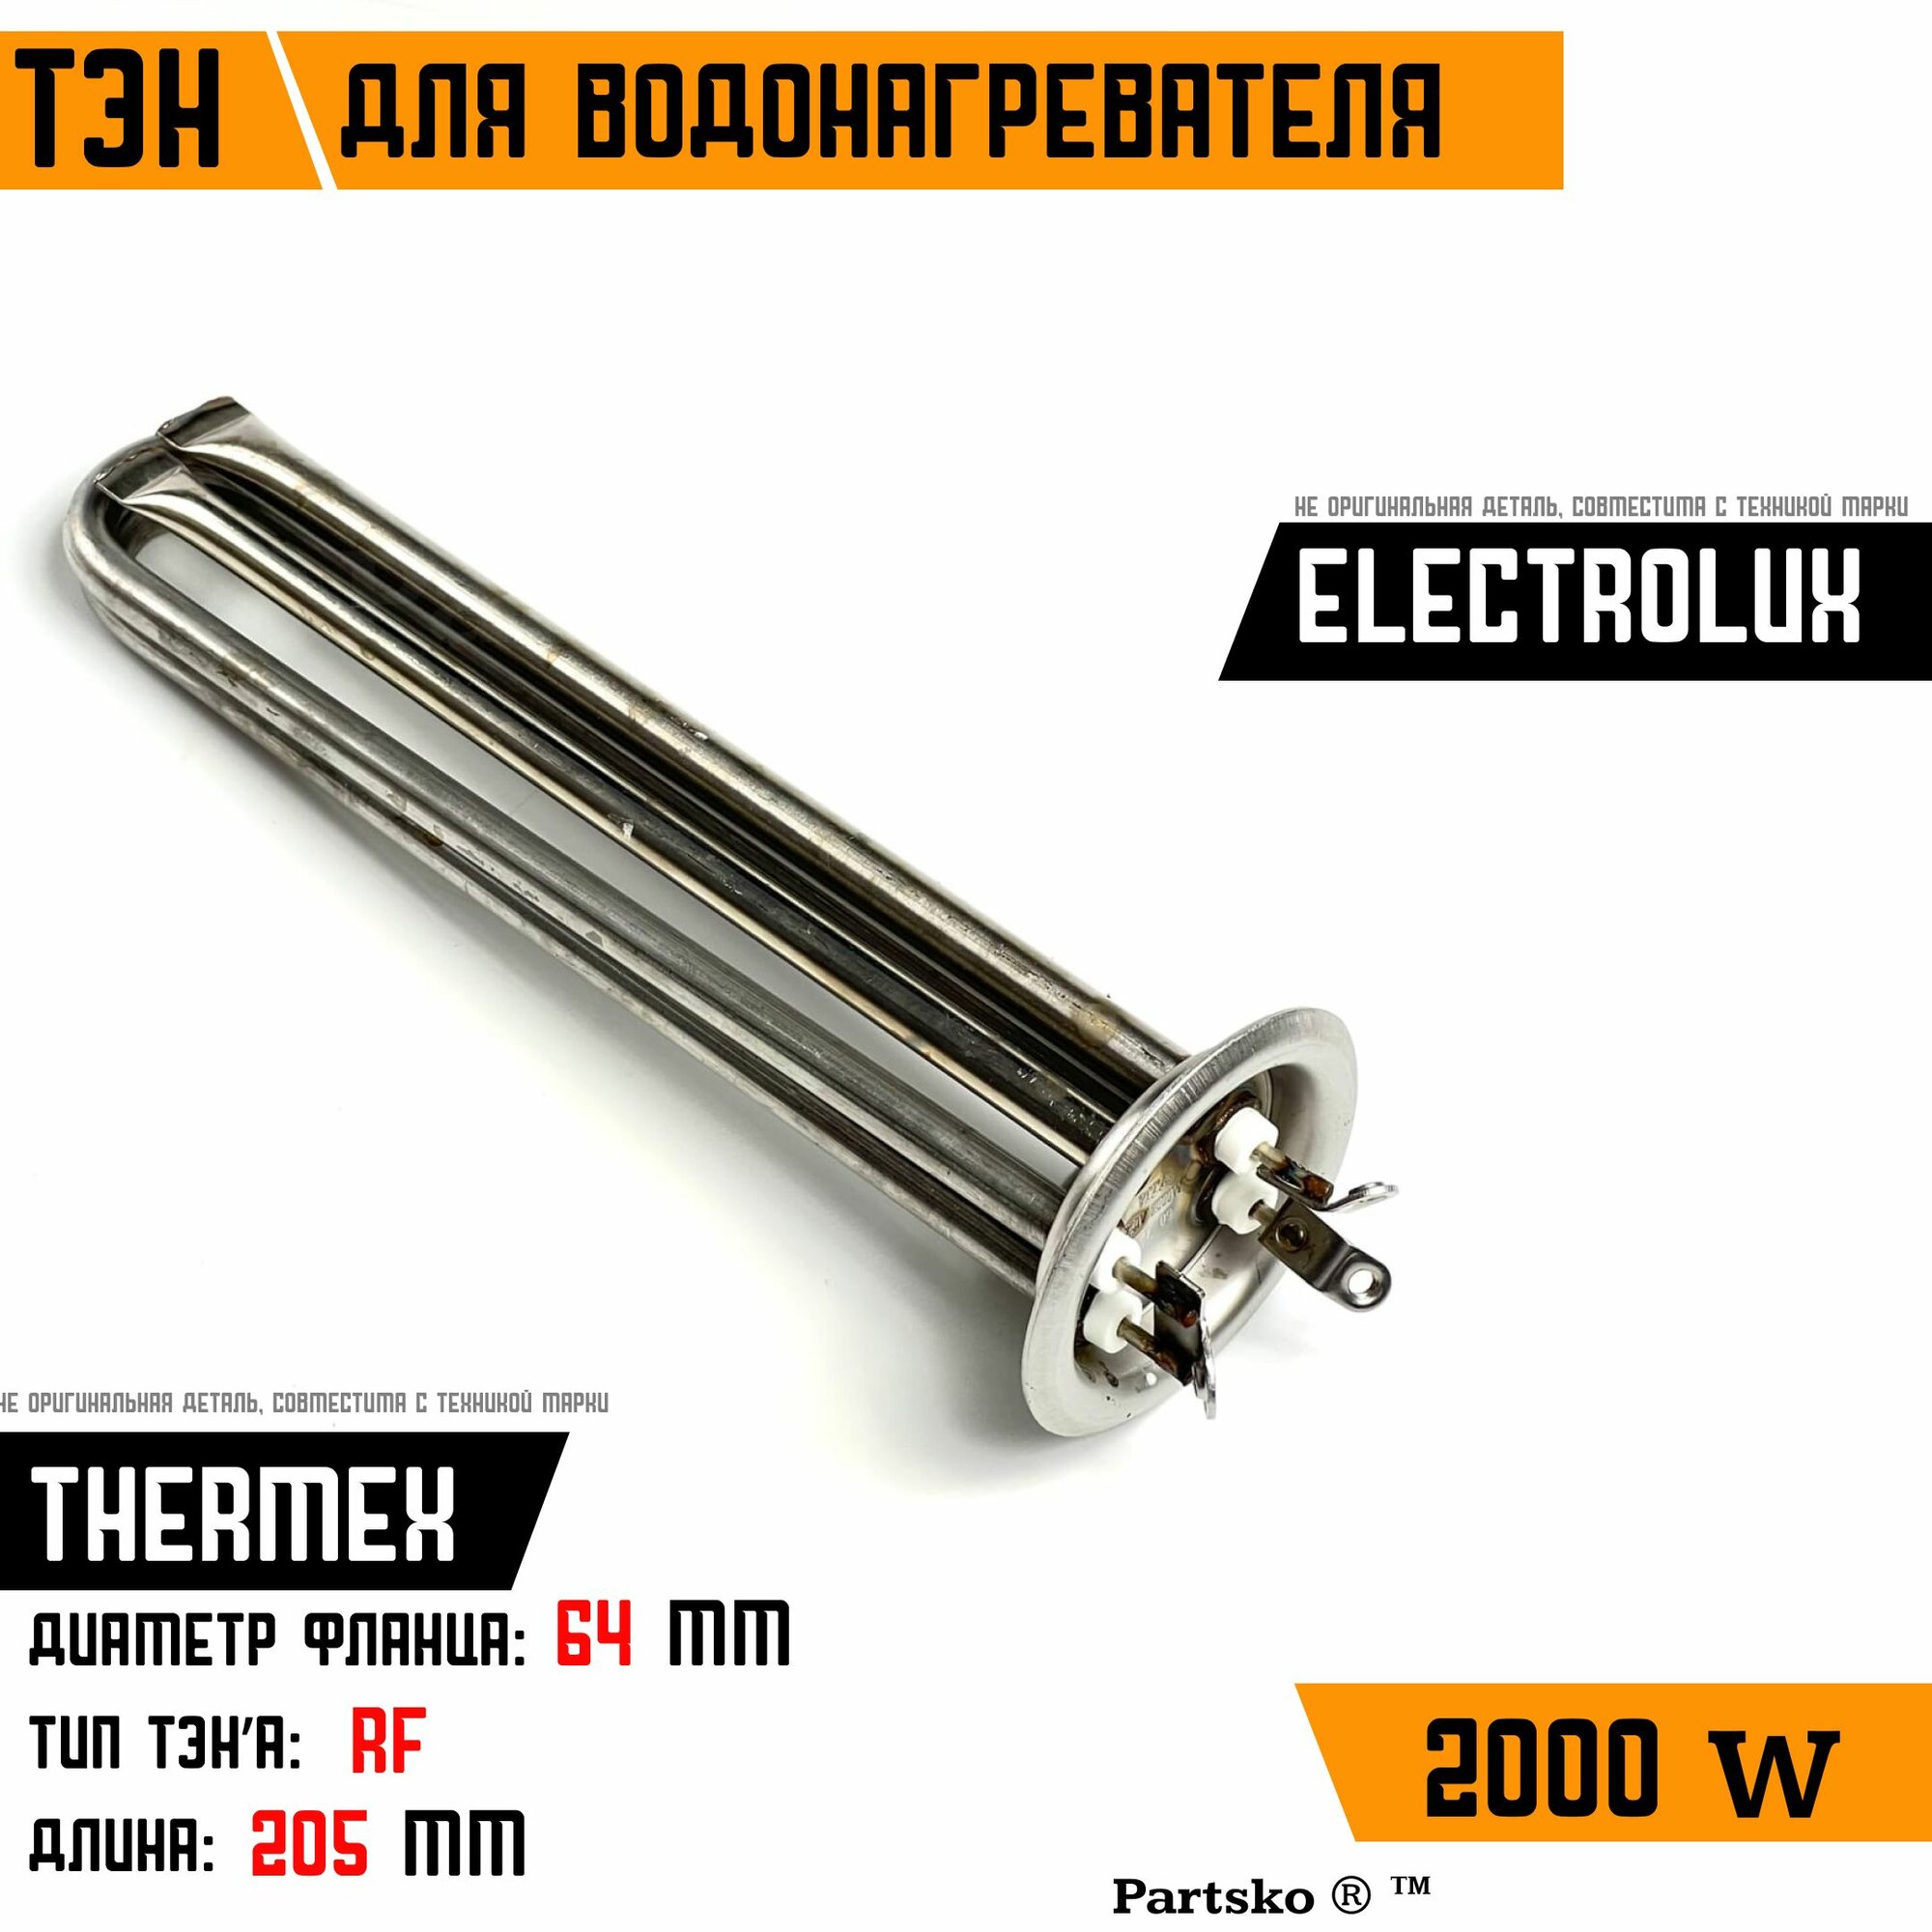 ТЭН для водонагревателя Thermex Термекс, Electrolux Электролюкс. 2000W, М4, L205мм, нержавеющая сталь, фланец 64 мм.